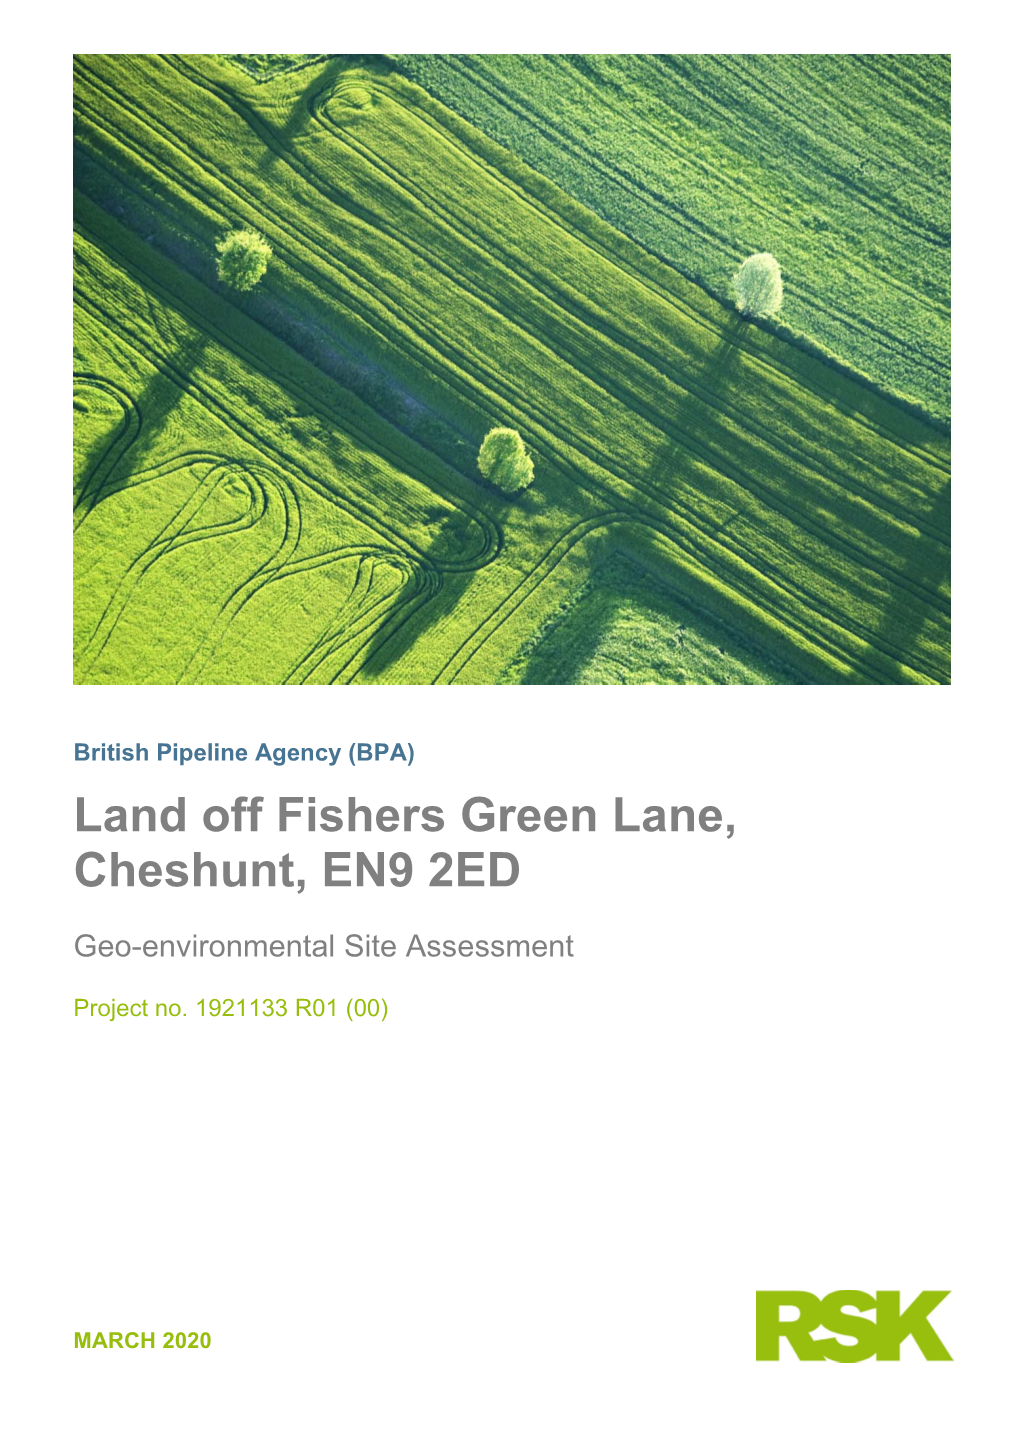 Land Off Fishers Green Lane, Cheshunt, EN9 2ED